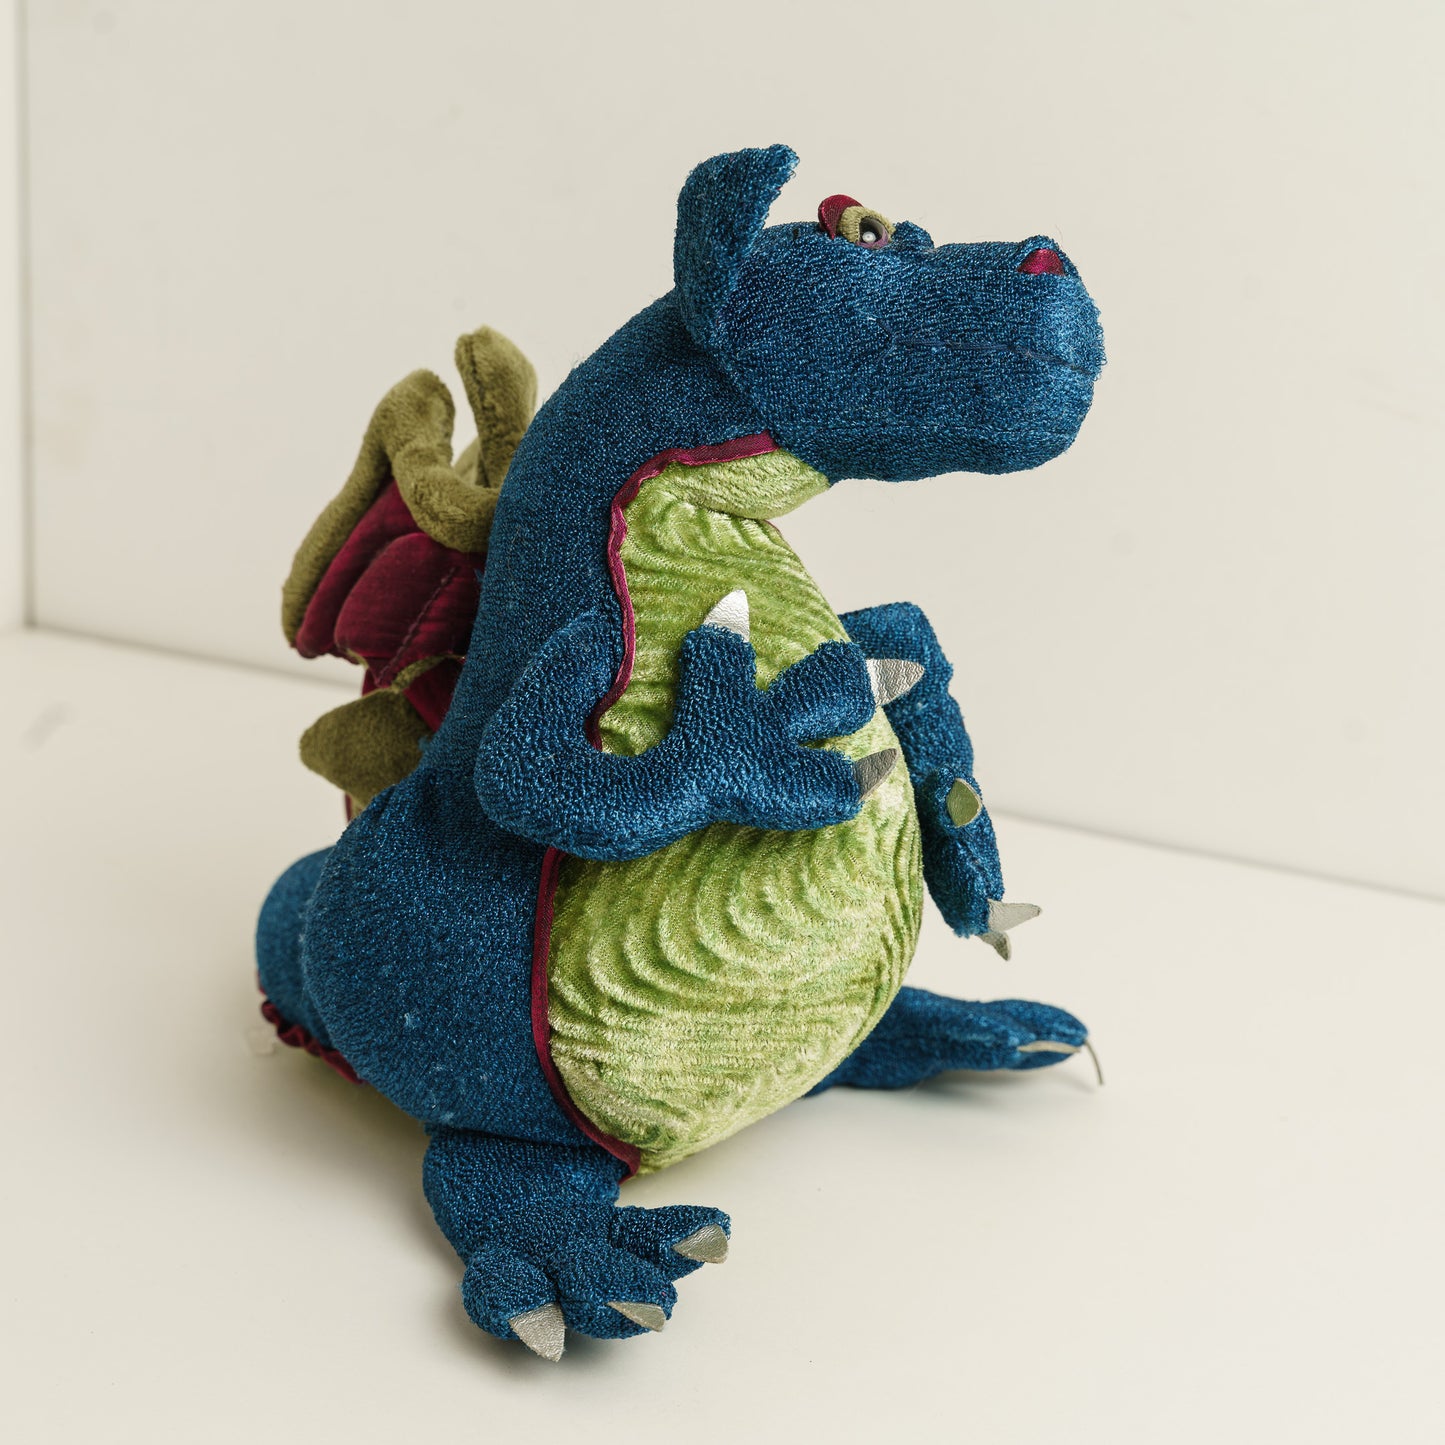 Francesca Dragon by Manhattan Toy